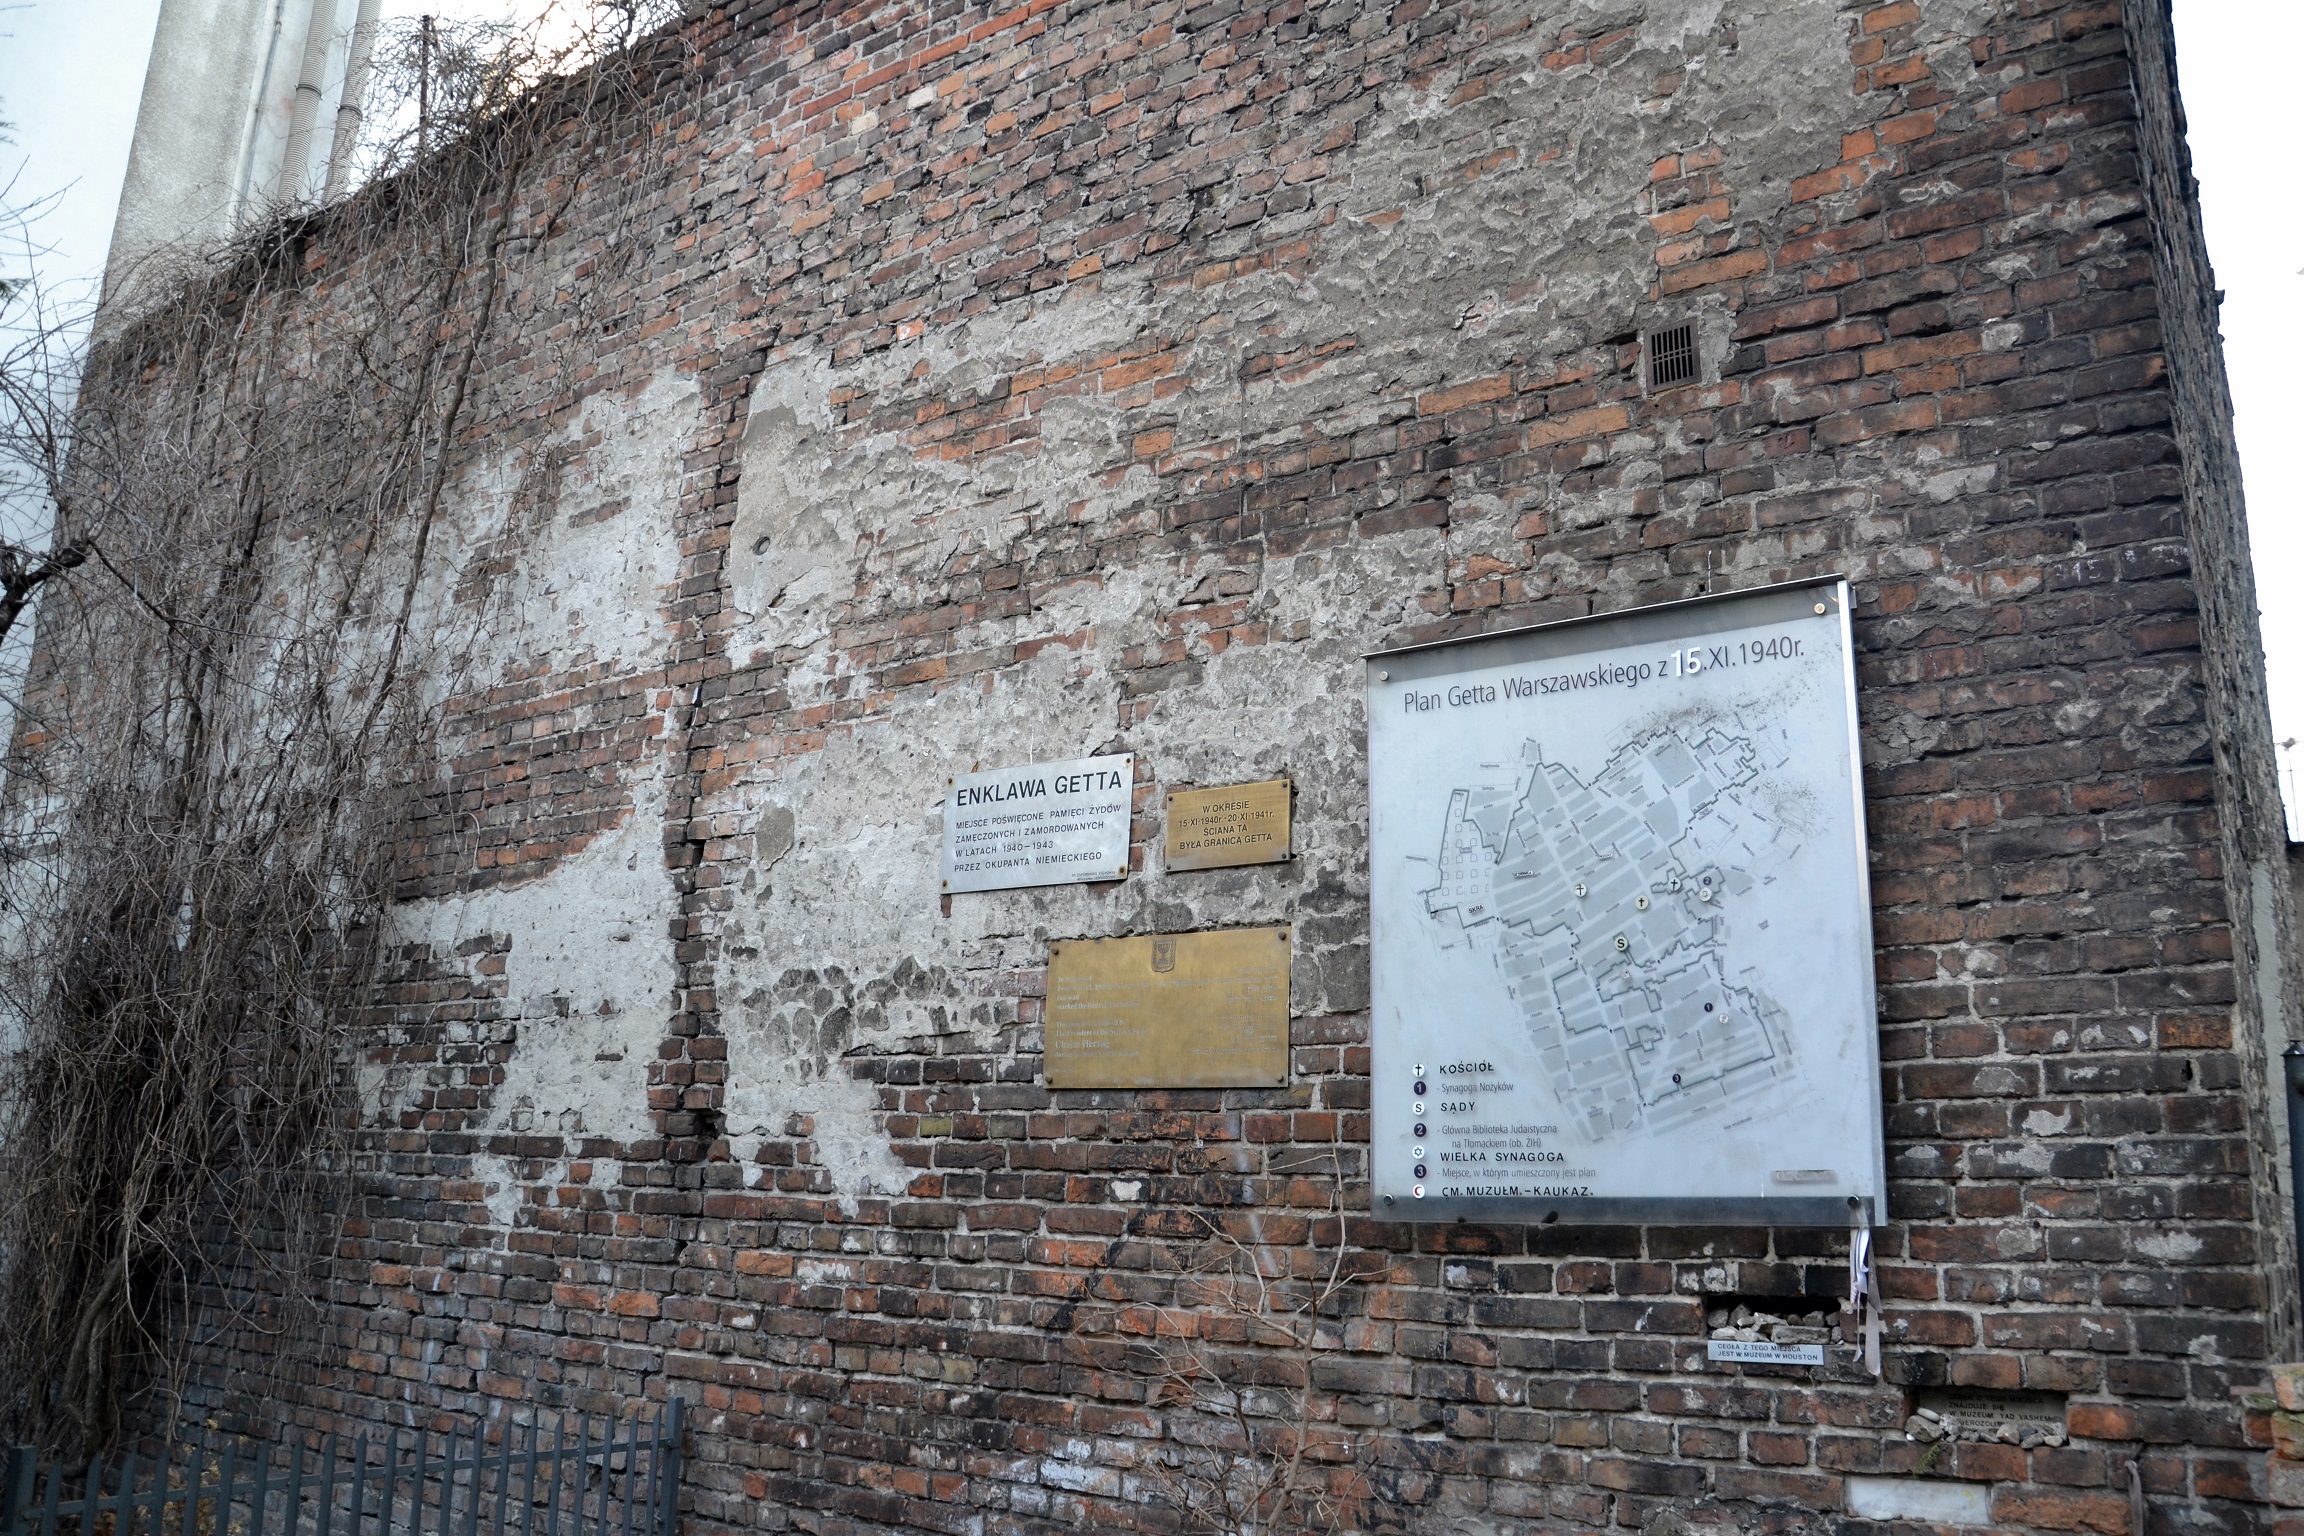 Foto: The Ghetto Wall and Jewish Heritage - Muro Gueto Varsovia - Varsovia (Masovian Voivodeship), Polonia